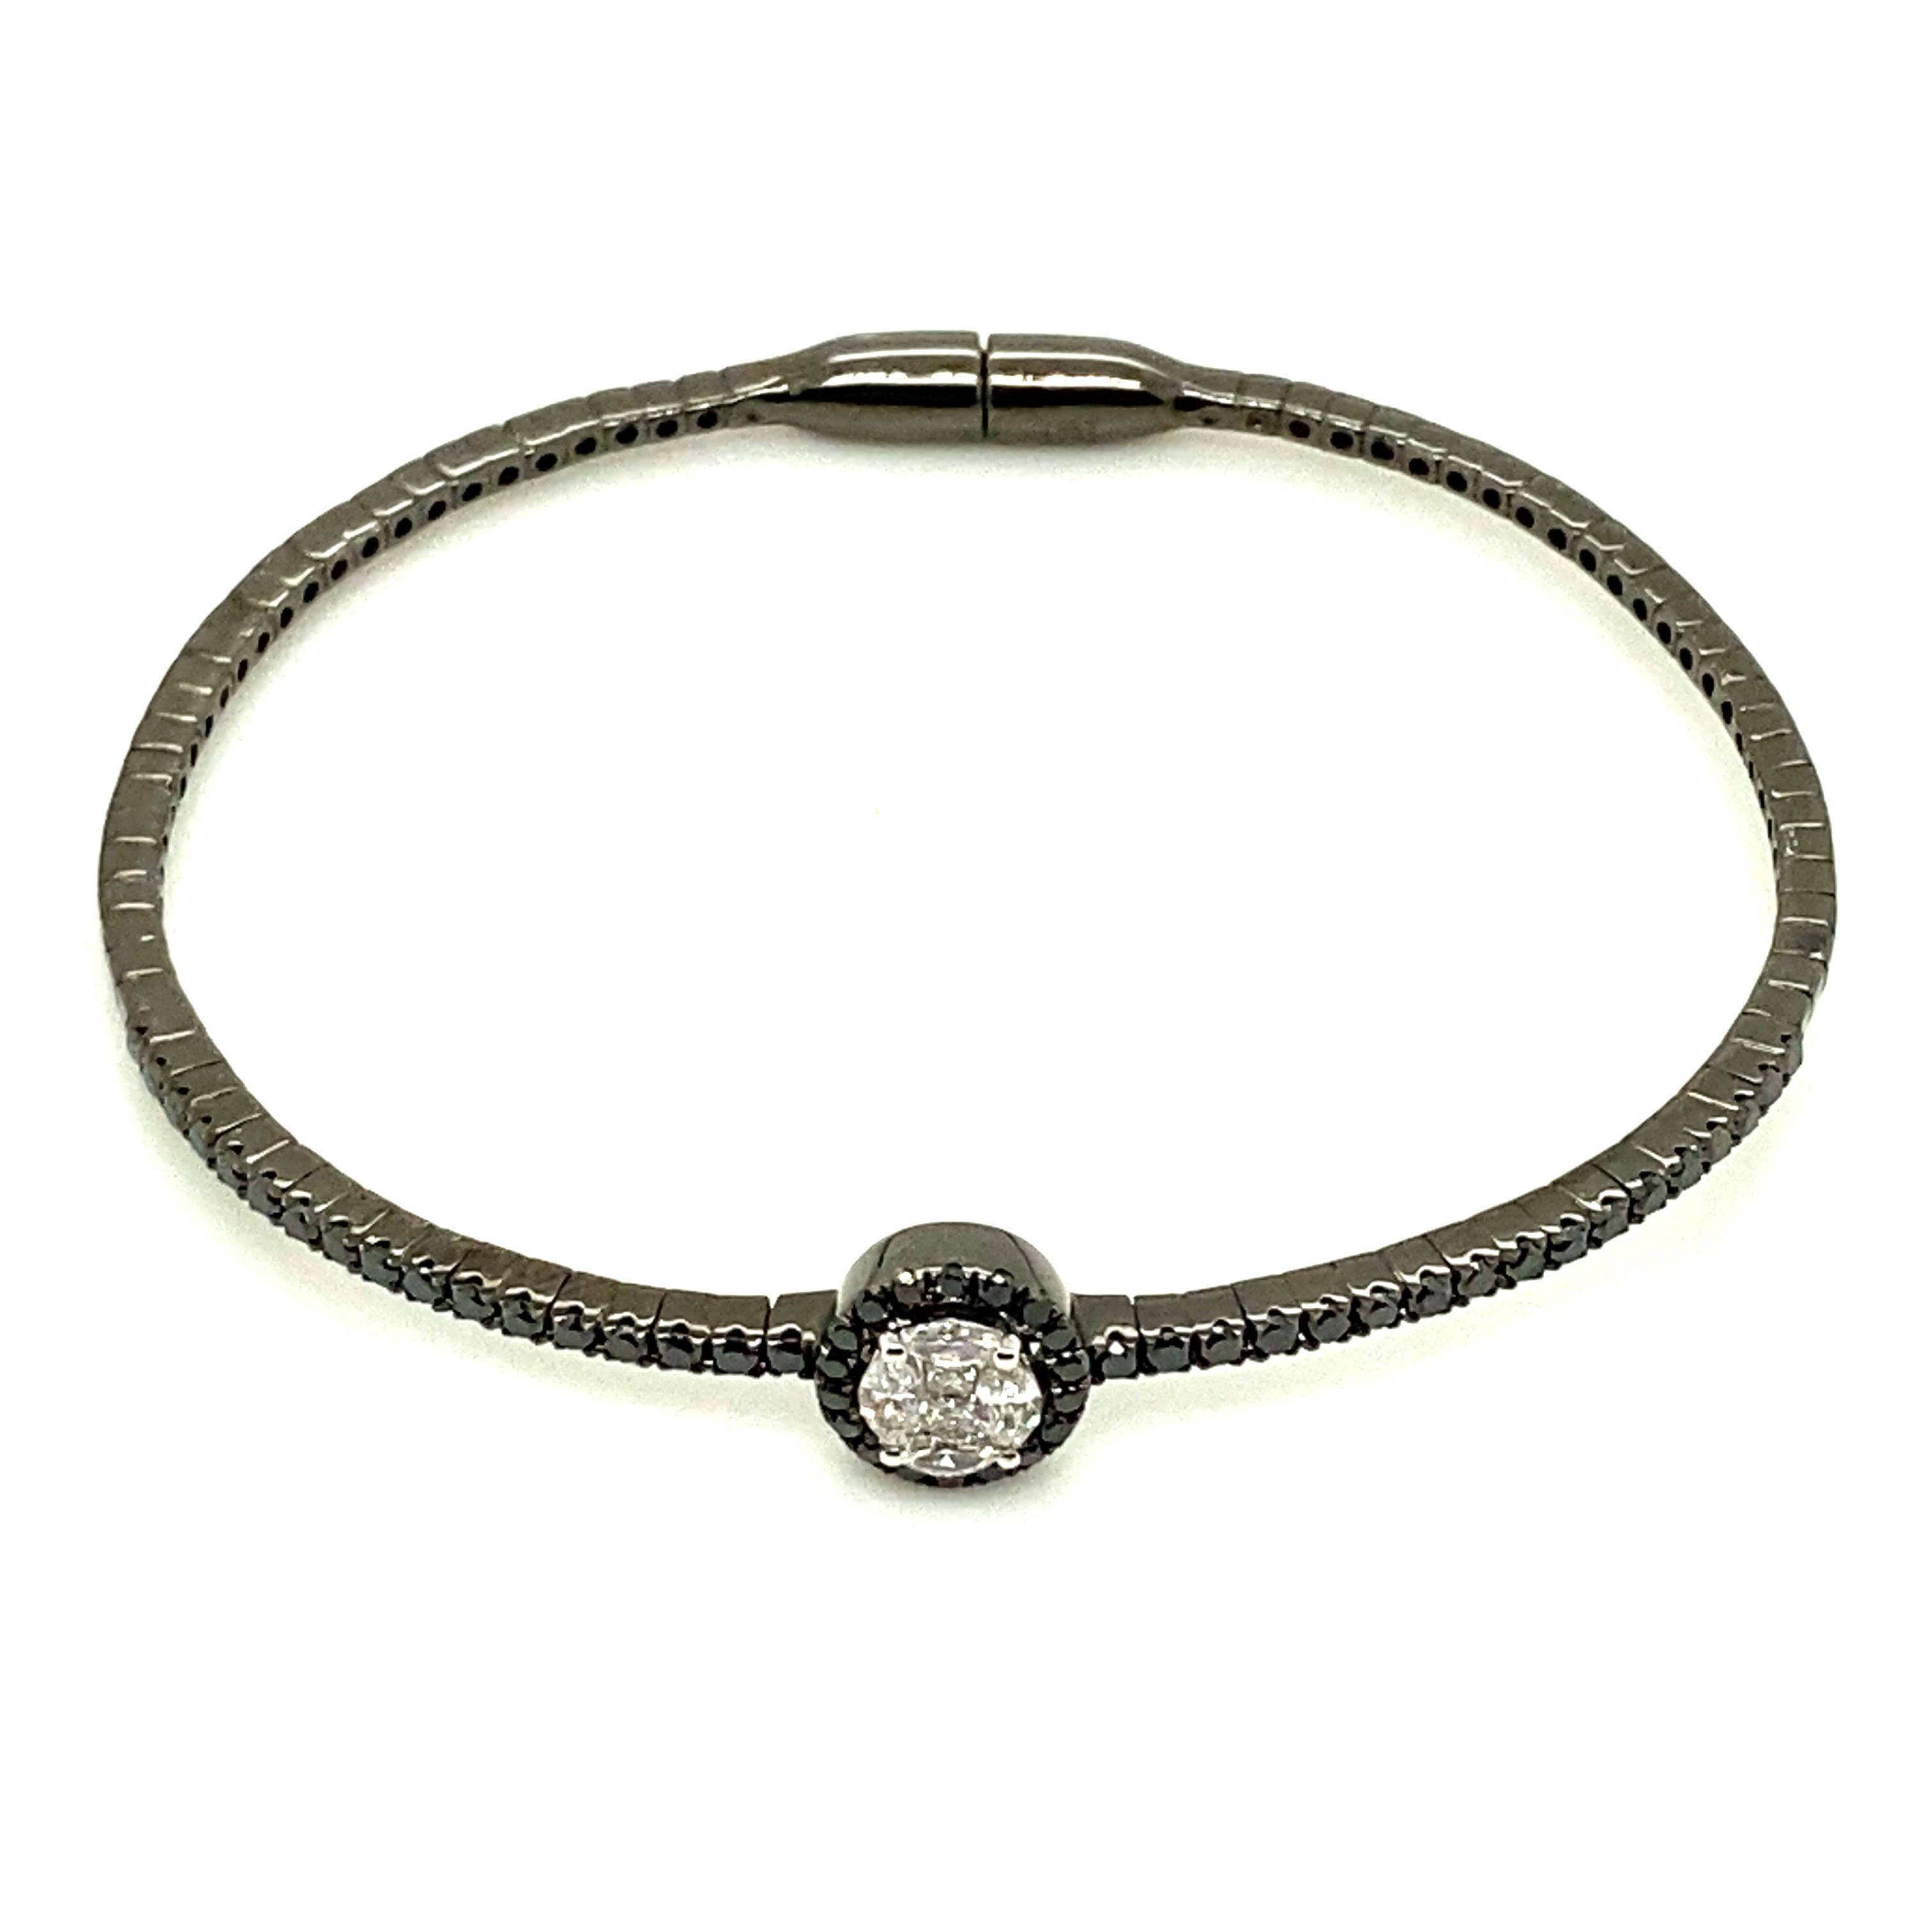 Bracelet en diamant blanc et or noirci :

Cet élégant bracelet est orné d'une grappe de diamants de forme ovale pesant 0,89 carat, située au centre du bracelet. Les diamants sont d'une qualité et d'une clarté exceptionnelles. Le design du bracelet